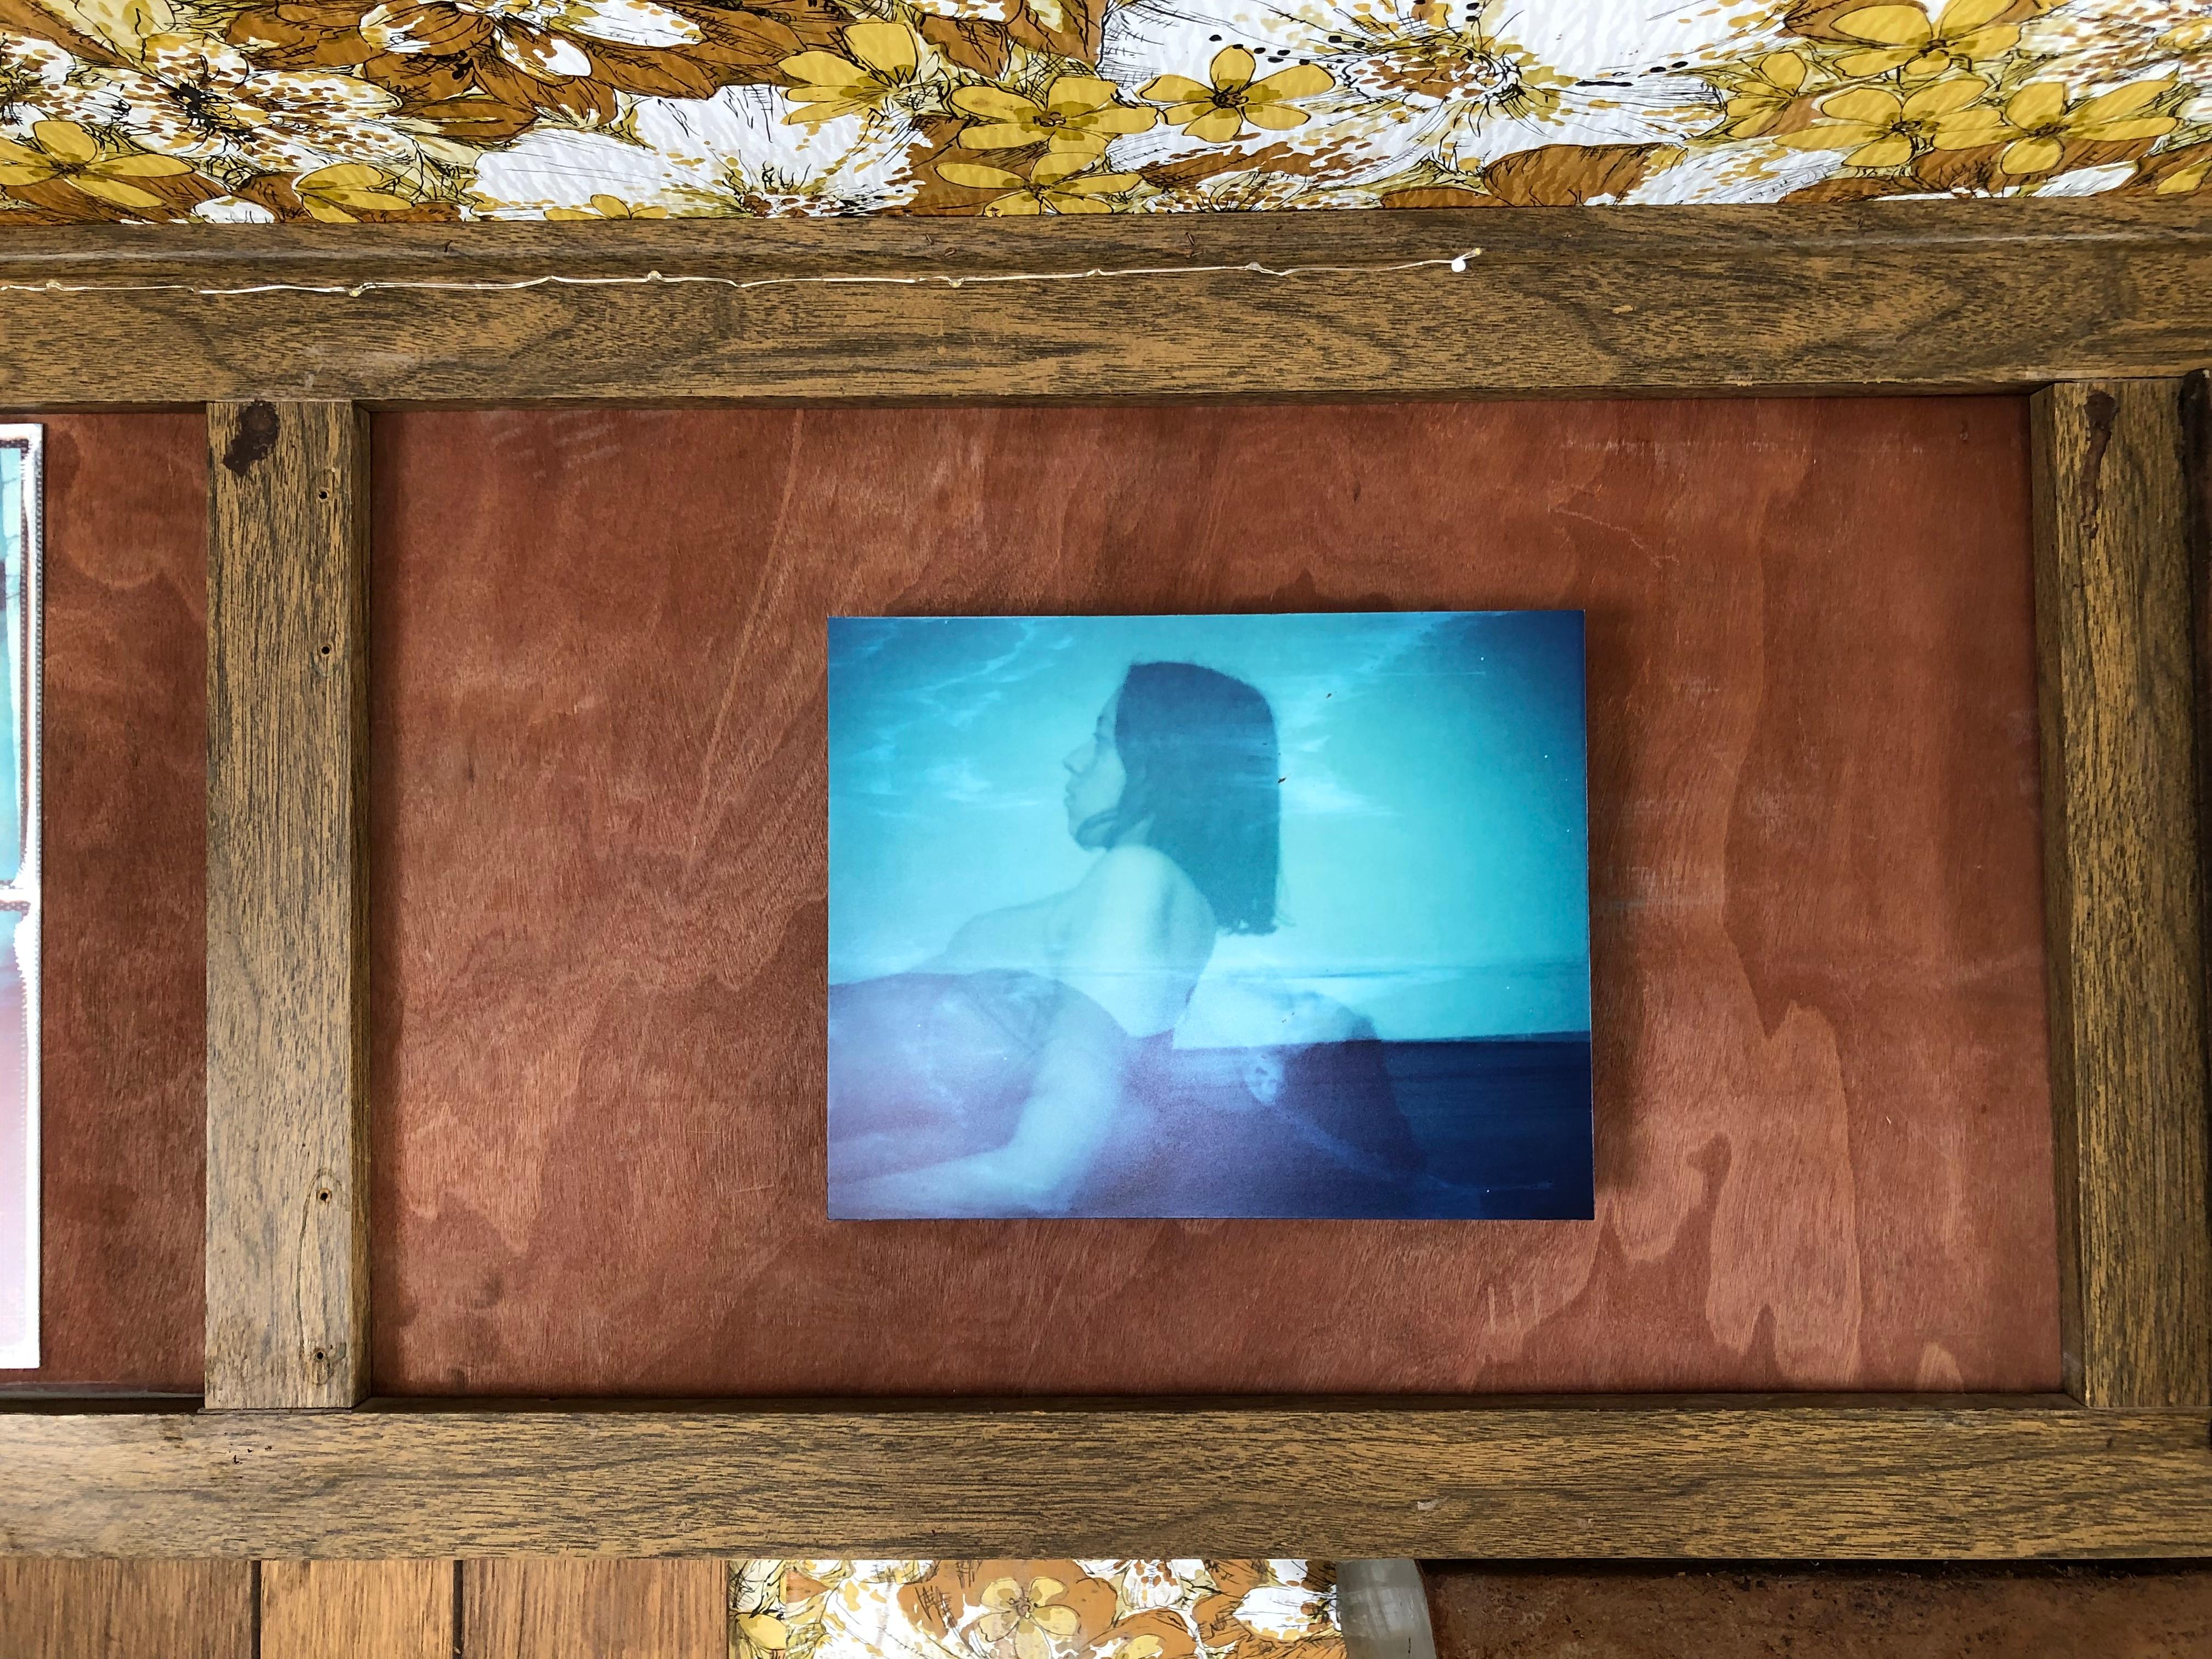 Schlafangst, 2013, Auflage 1/10. 25x30cm.
Digitaler C-Print auf Basis einer Polaroid ID-UV. Montiert.

Die zusätzlichen Fotos zeigen dieses Werk in der ständigen Sammlung des Polaroid Museums der Bombay Beach Biennale, 2019. 

Der Künstler über sein